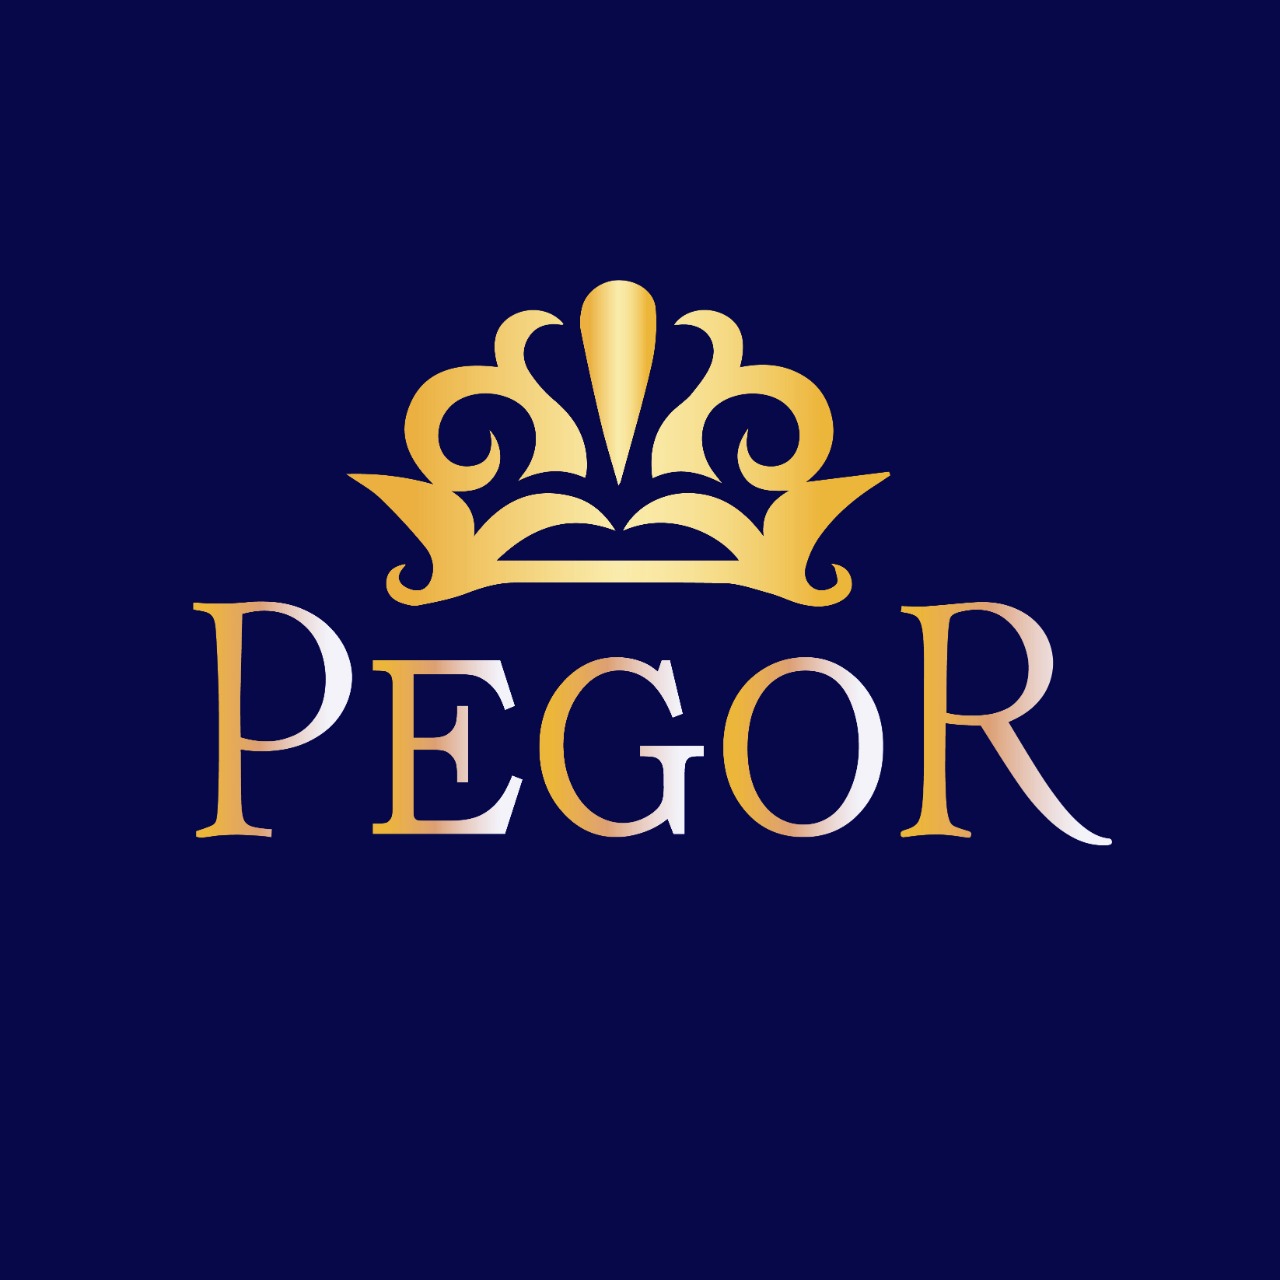 Pegor